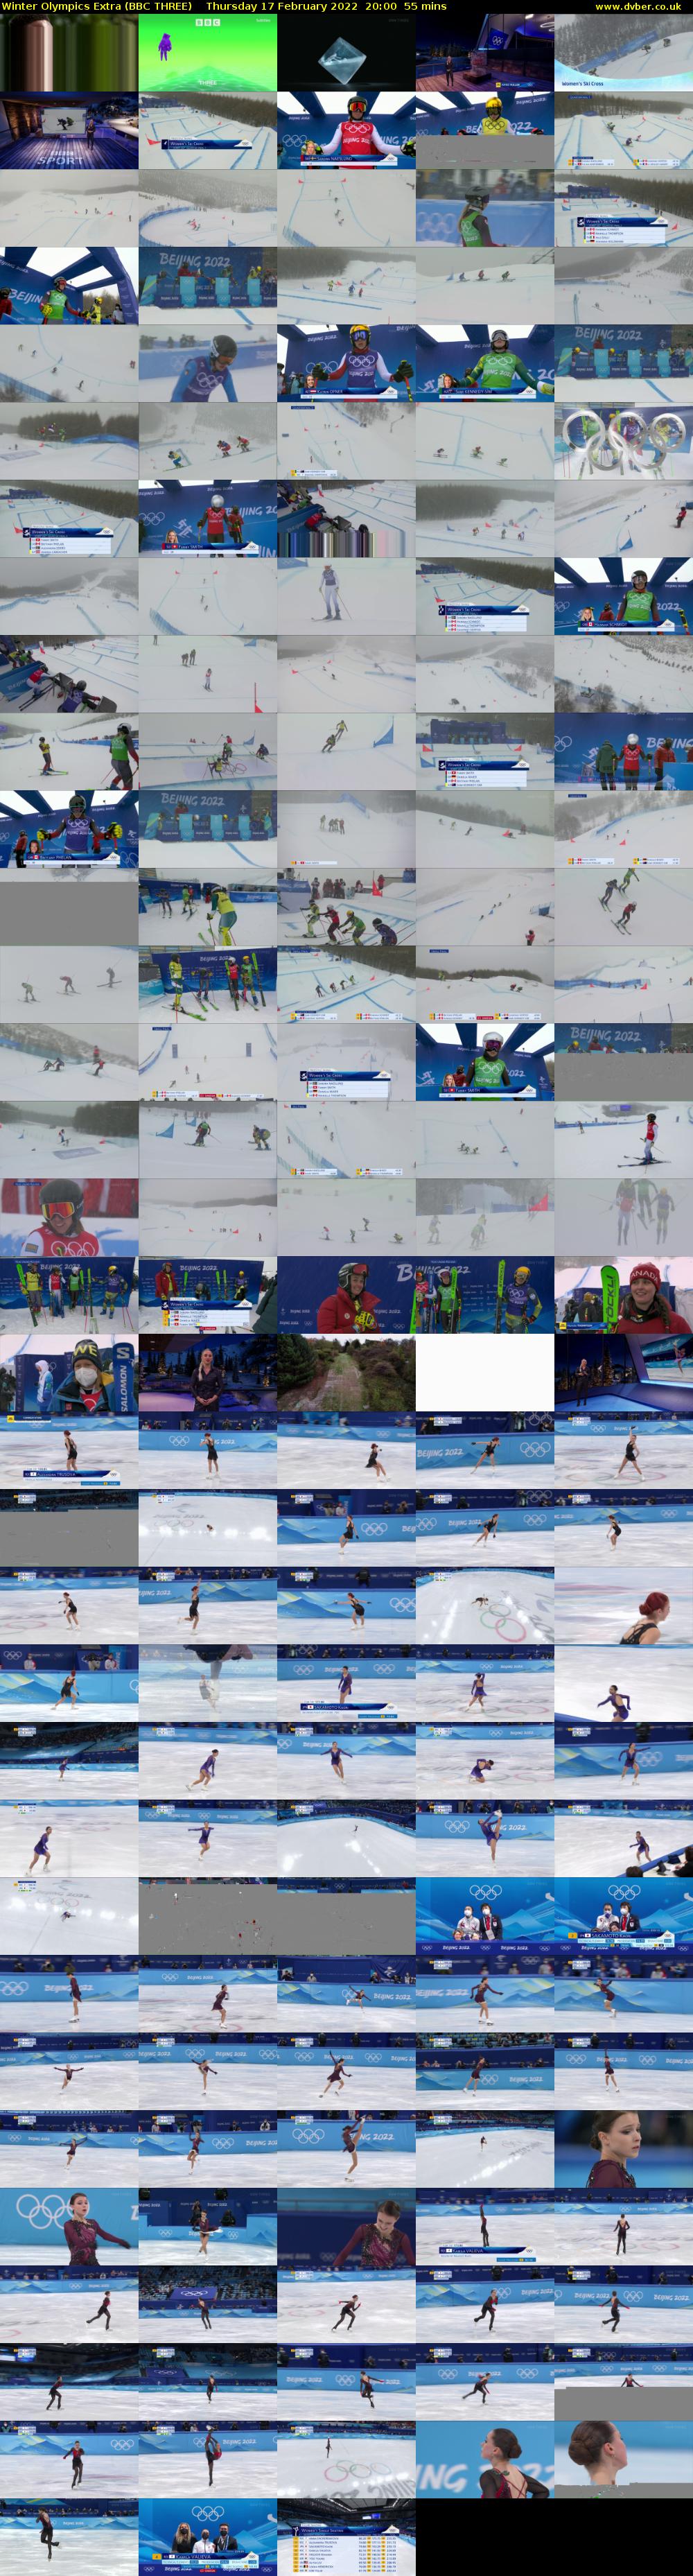 Winter Olympics Extra (BBC THREE) Thursday 17 February 2022 20:00 - 20:55